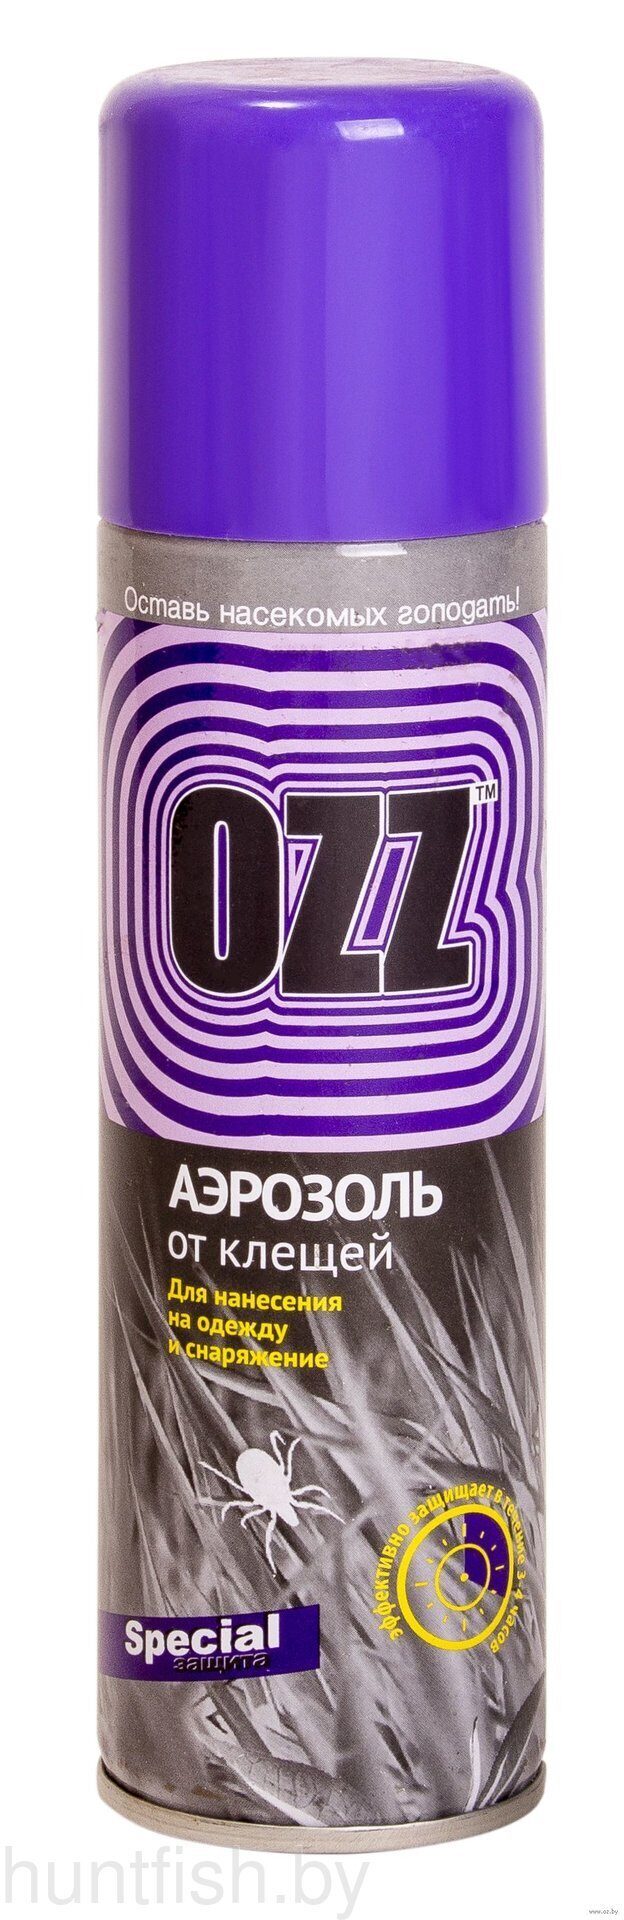 OZZ Средство репеллентно-акарицидное от клещей в аэрозольной упаковке 150мл.